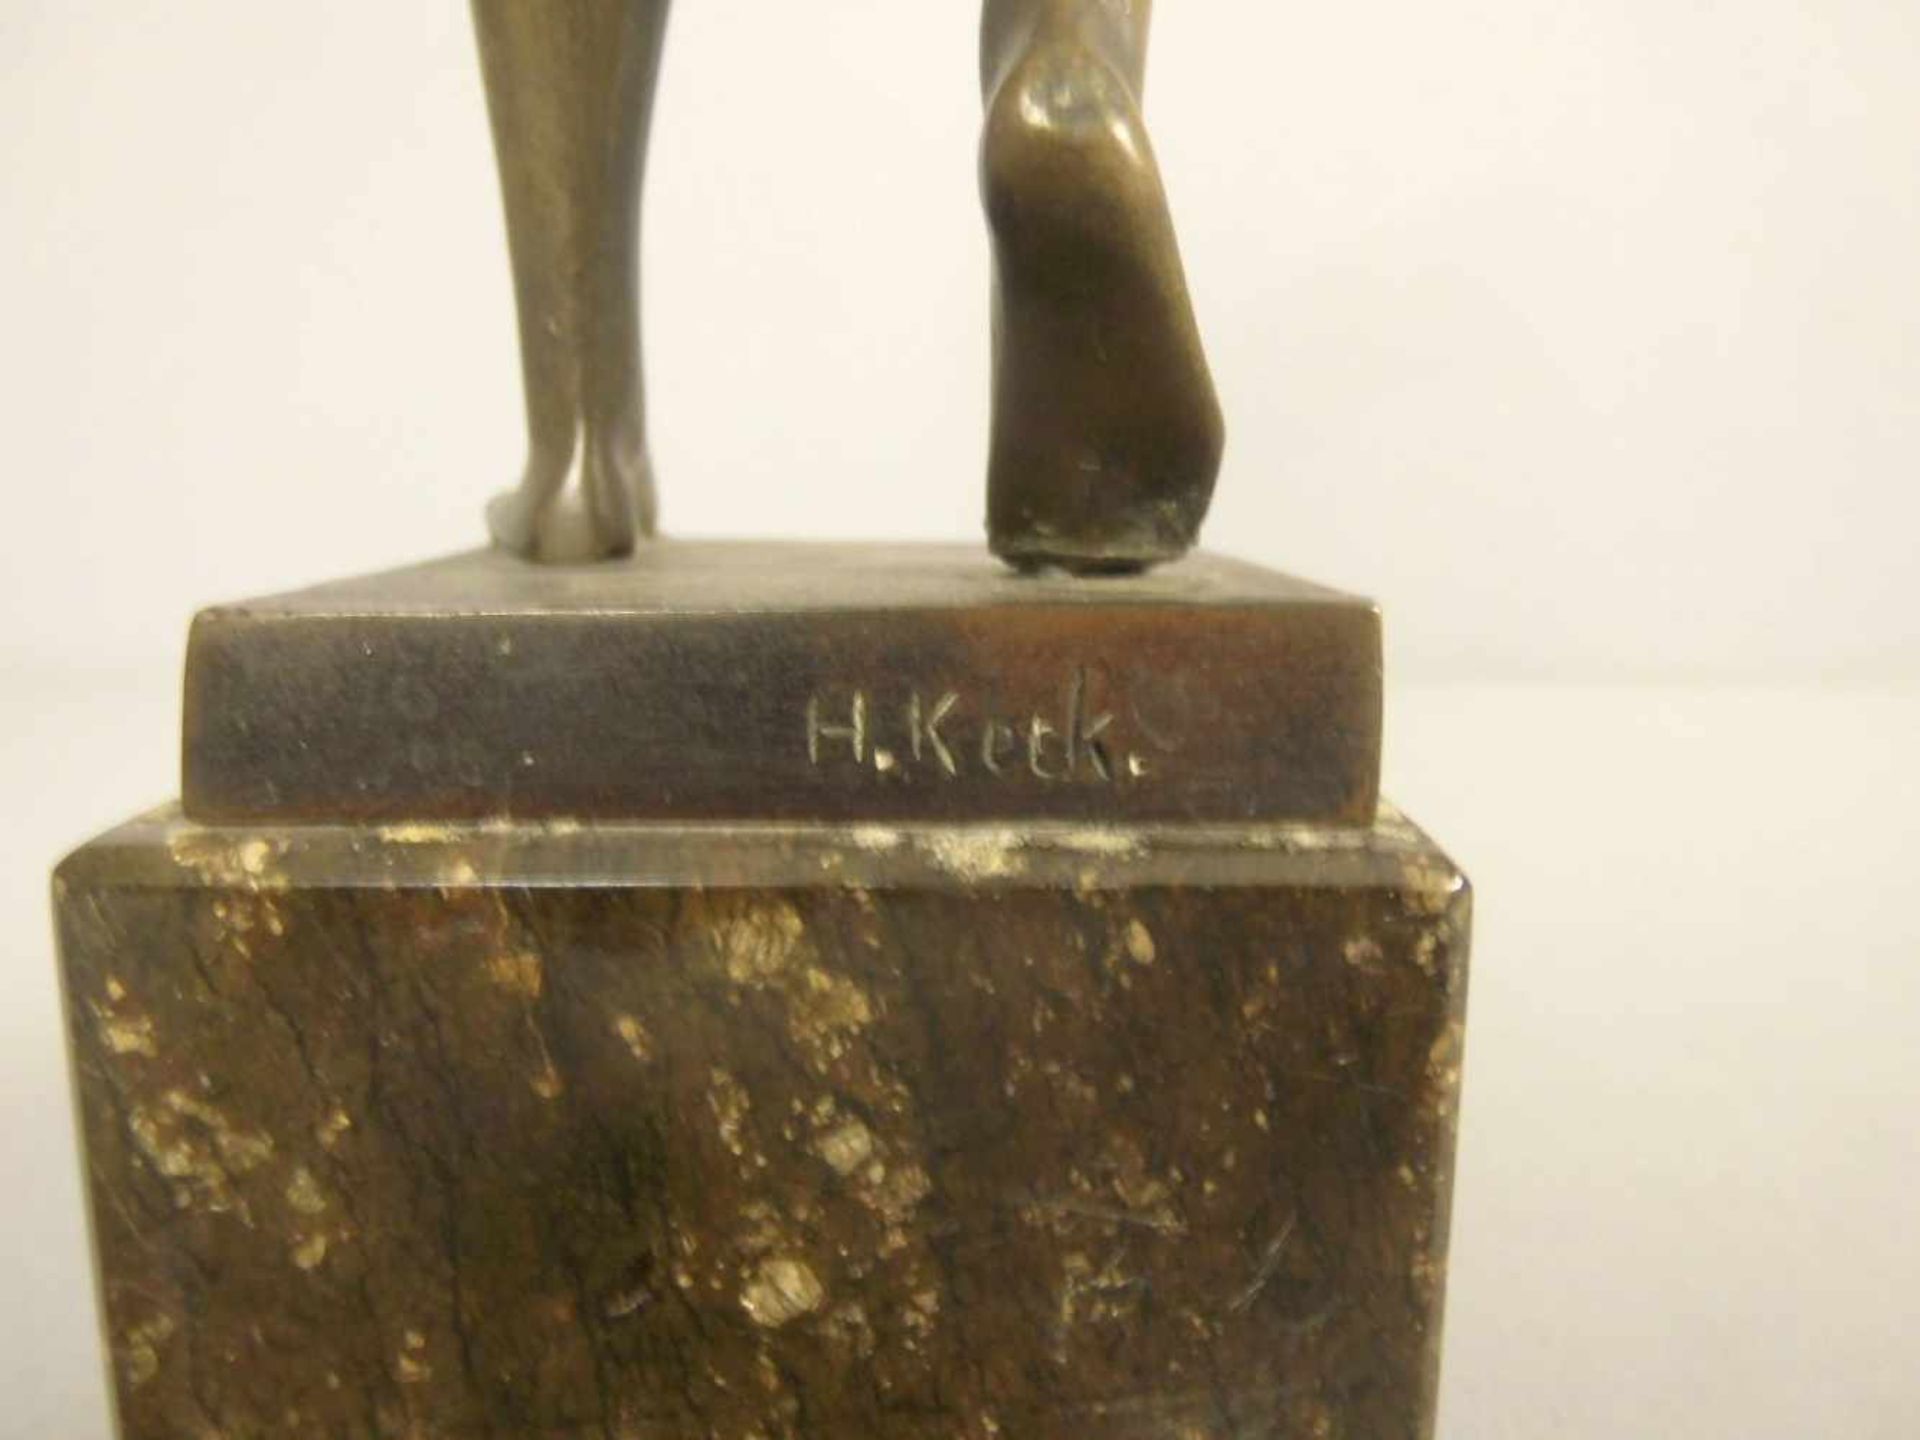 KECK, HANS (deutscher Bildhauer, 19./20. Jh.), Skulptur / sculpture: "Diana", , um 1920, Bronze - Bild 5 aus 5